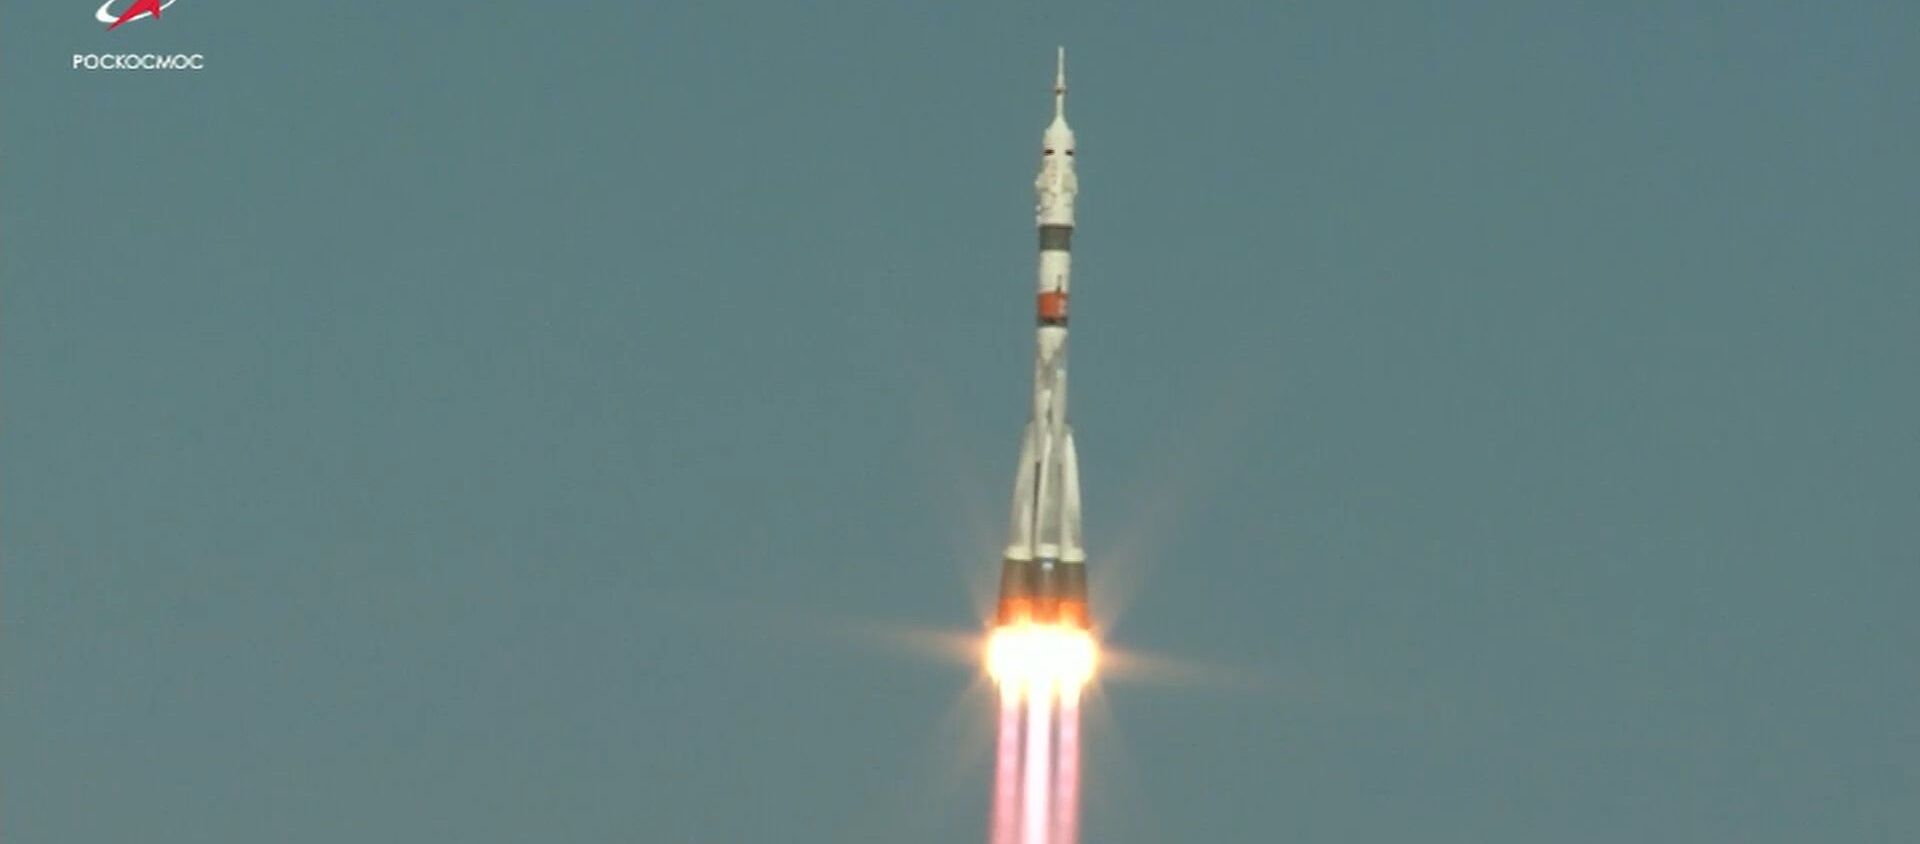 Рекорд скорости: российский Союз МС-17 доставил экипаж на МКС за 3 часа и 3 минуты - Sputnik Литва, 1920, 15.10.2020